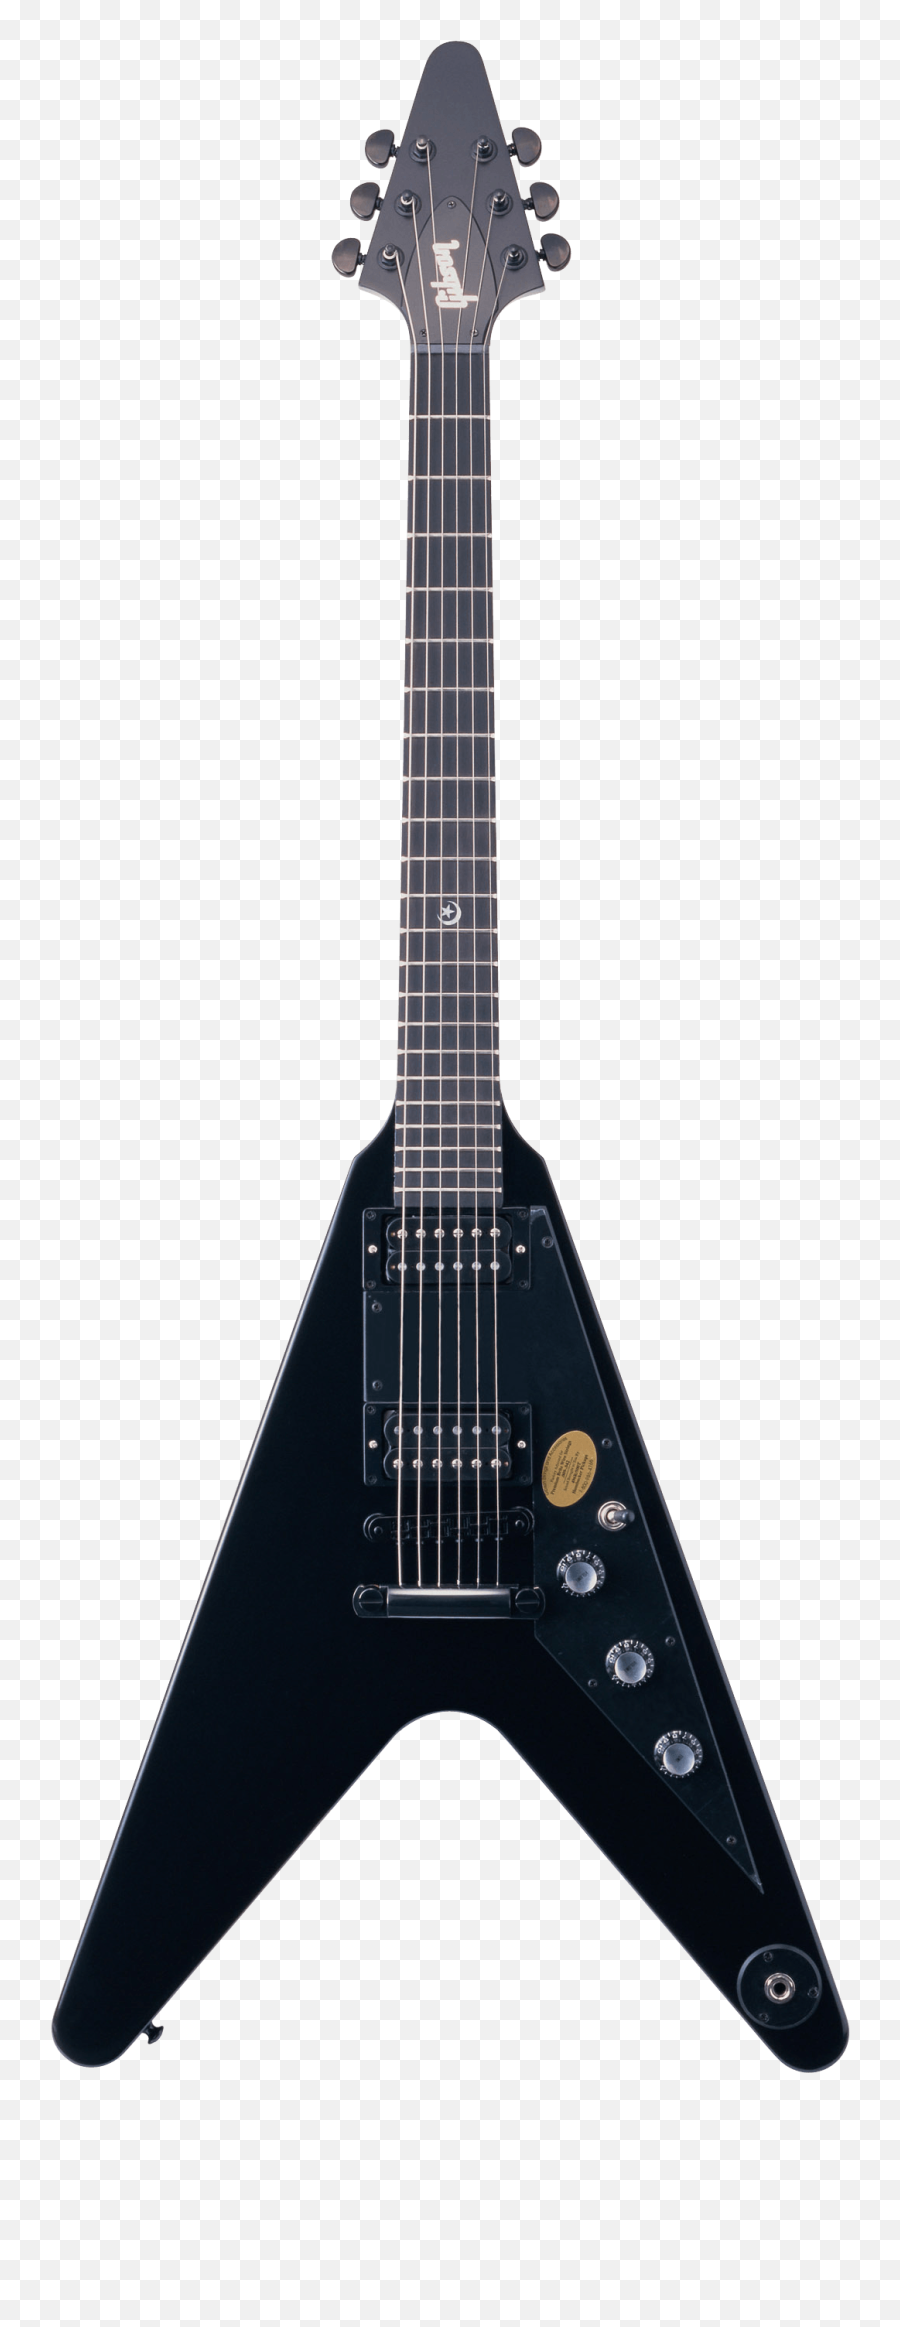 Gibson Metal Rock Guitar Transparent - Electric Guitar Black White Png Emoji,Guitar Transparent